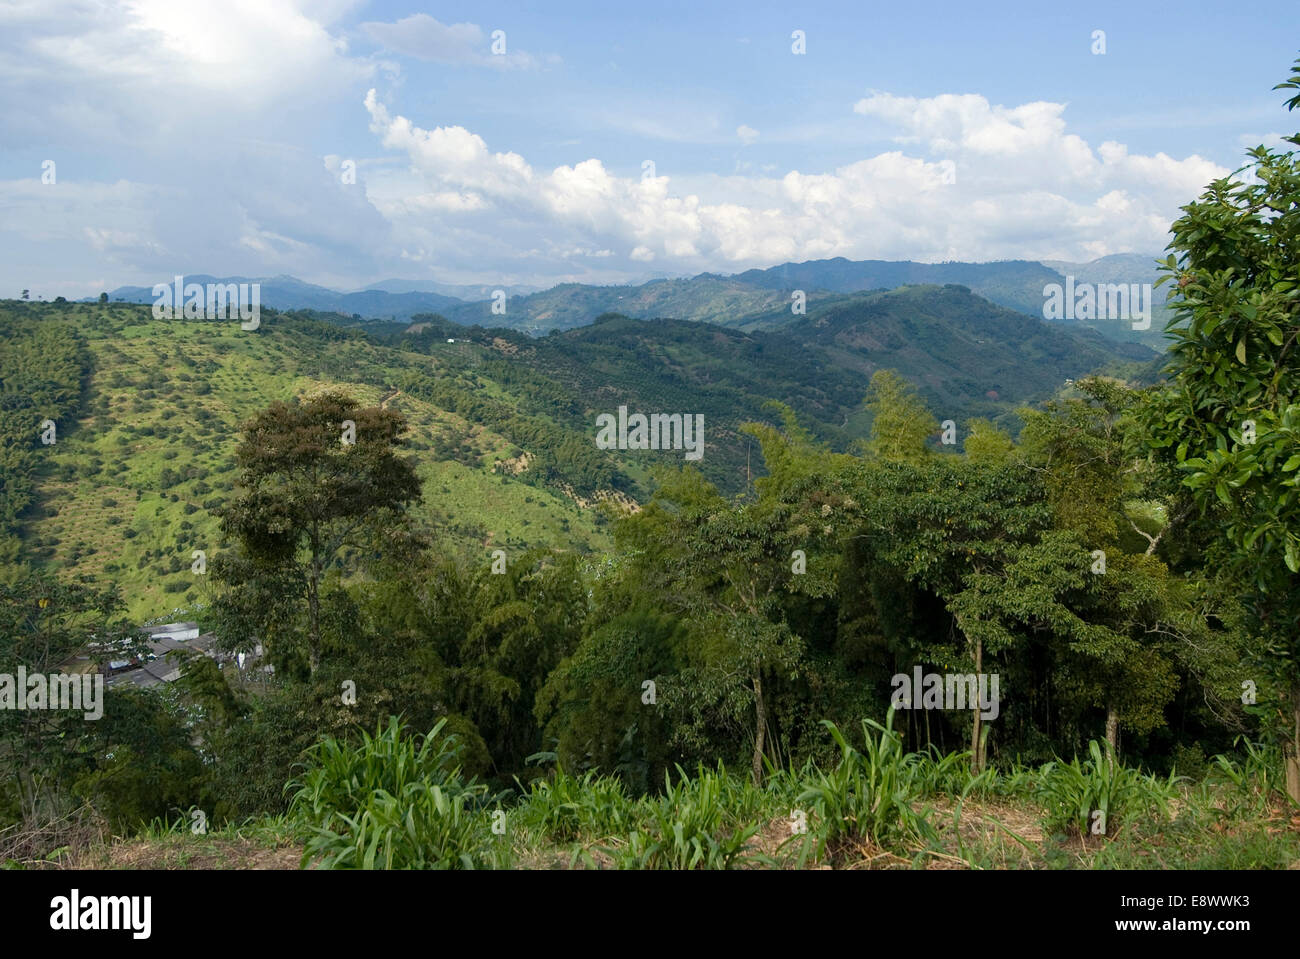 Hacienda El Caney (plantation), in the coffee-growing region, near Manizales, Colombia Stock Photo